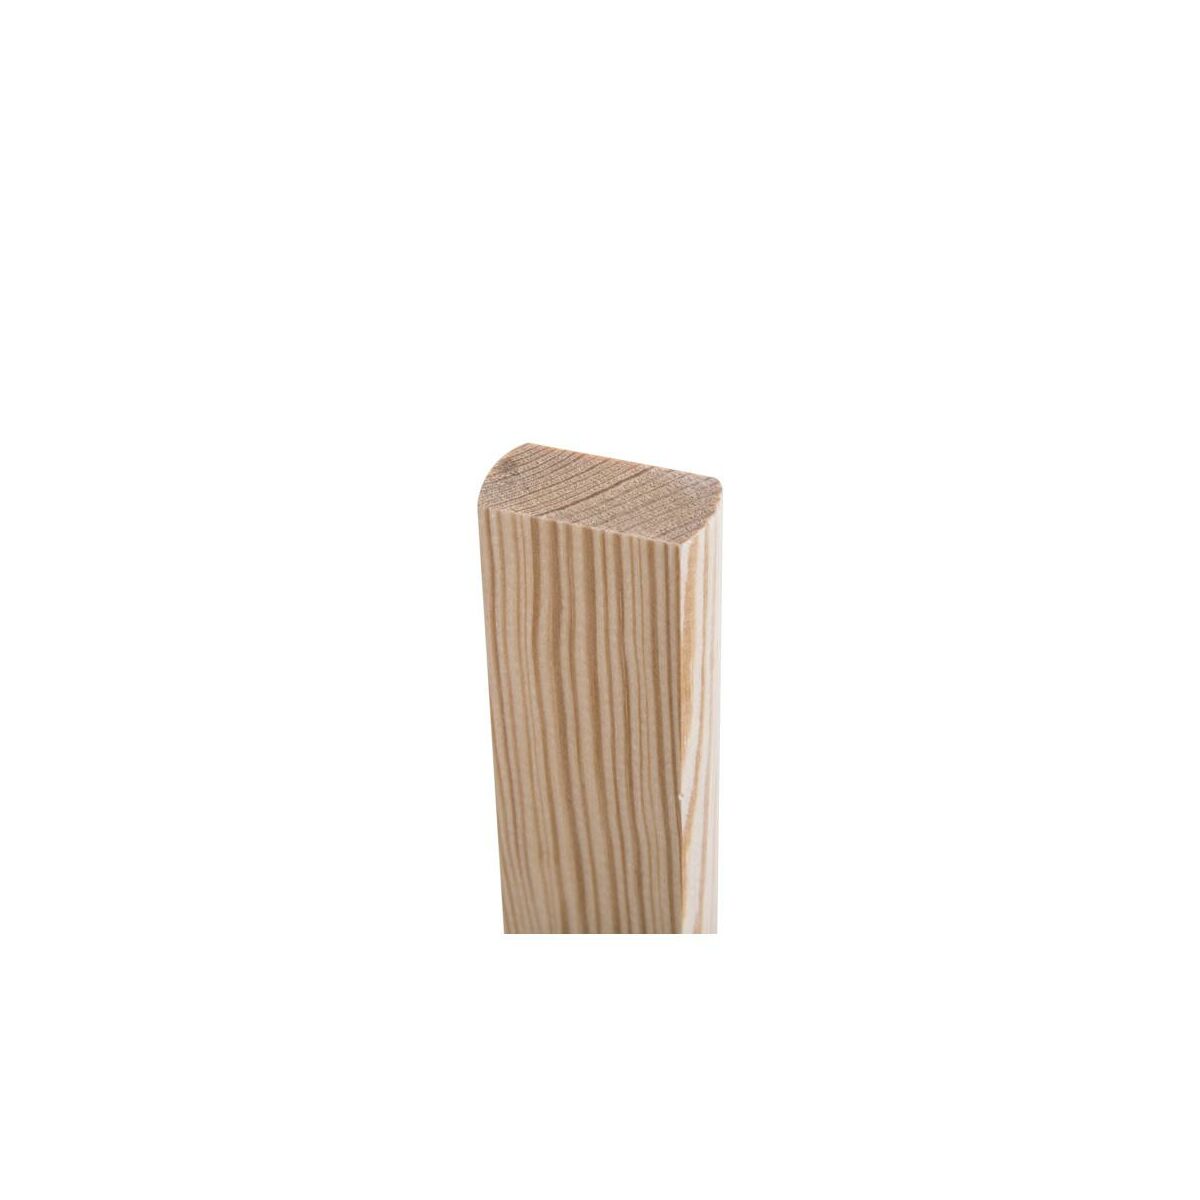 Tralka balustrady drewniana sosnowa surowa WZ 16 950x38x20 mm